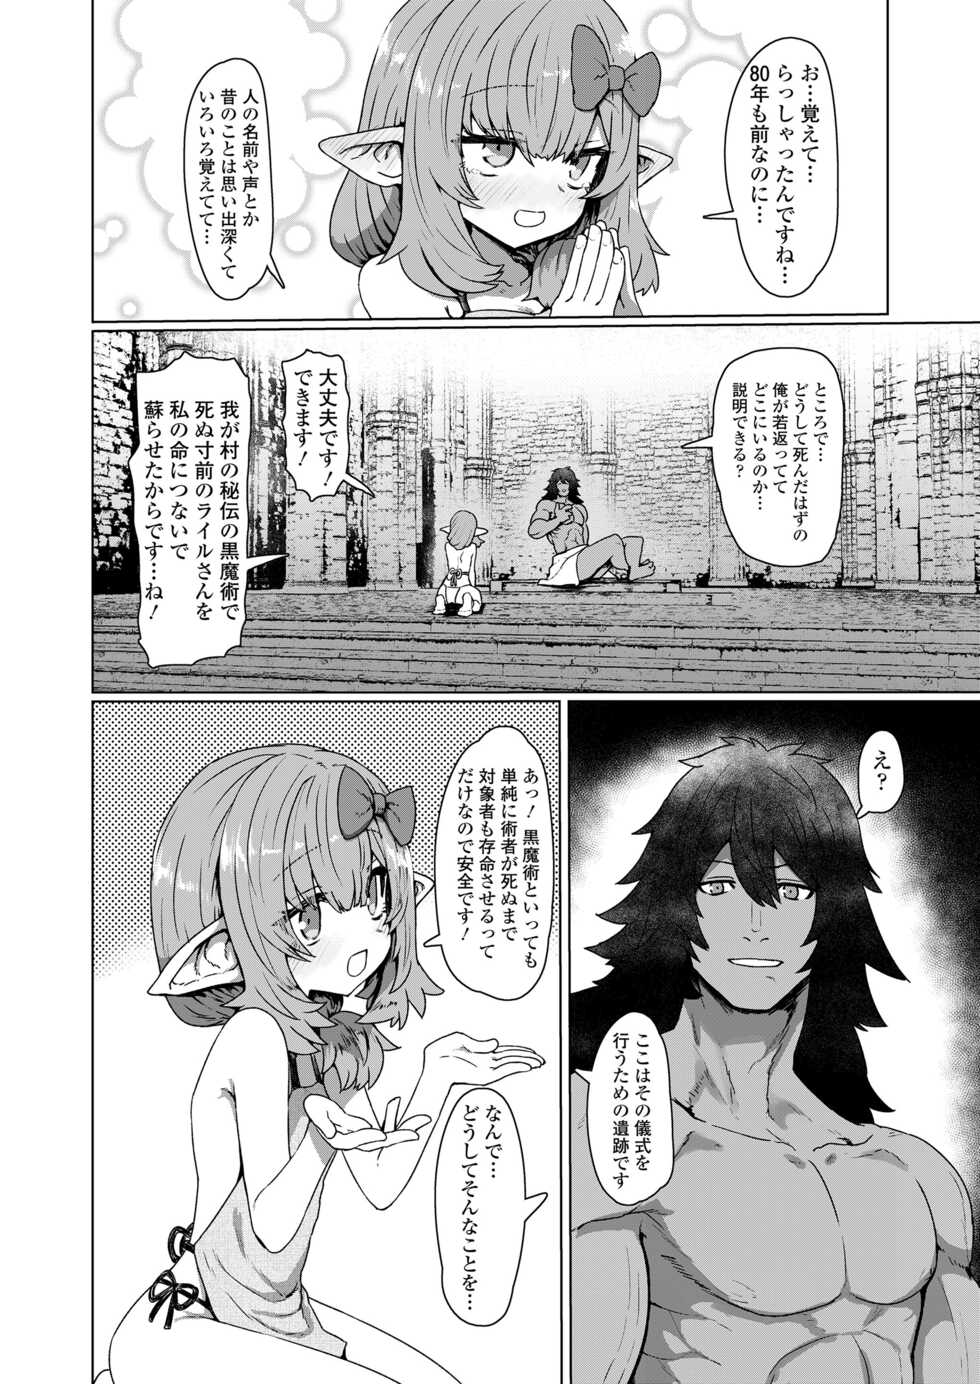 Towako 13 [Digital] - Page 12